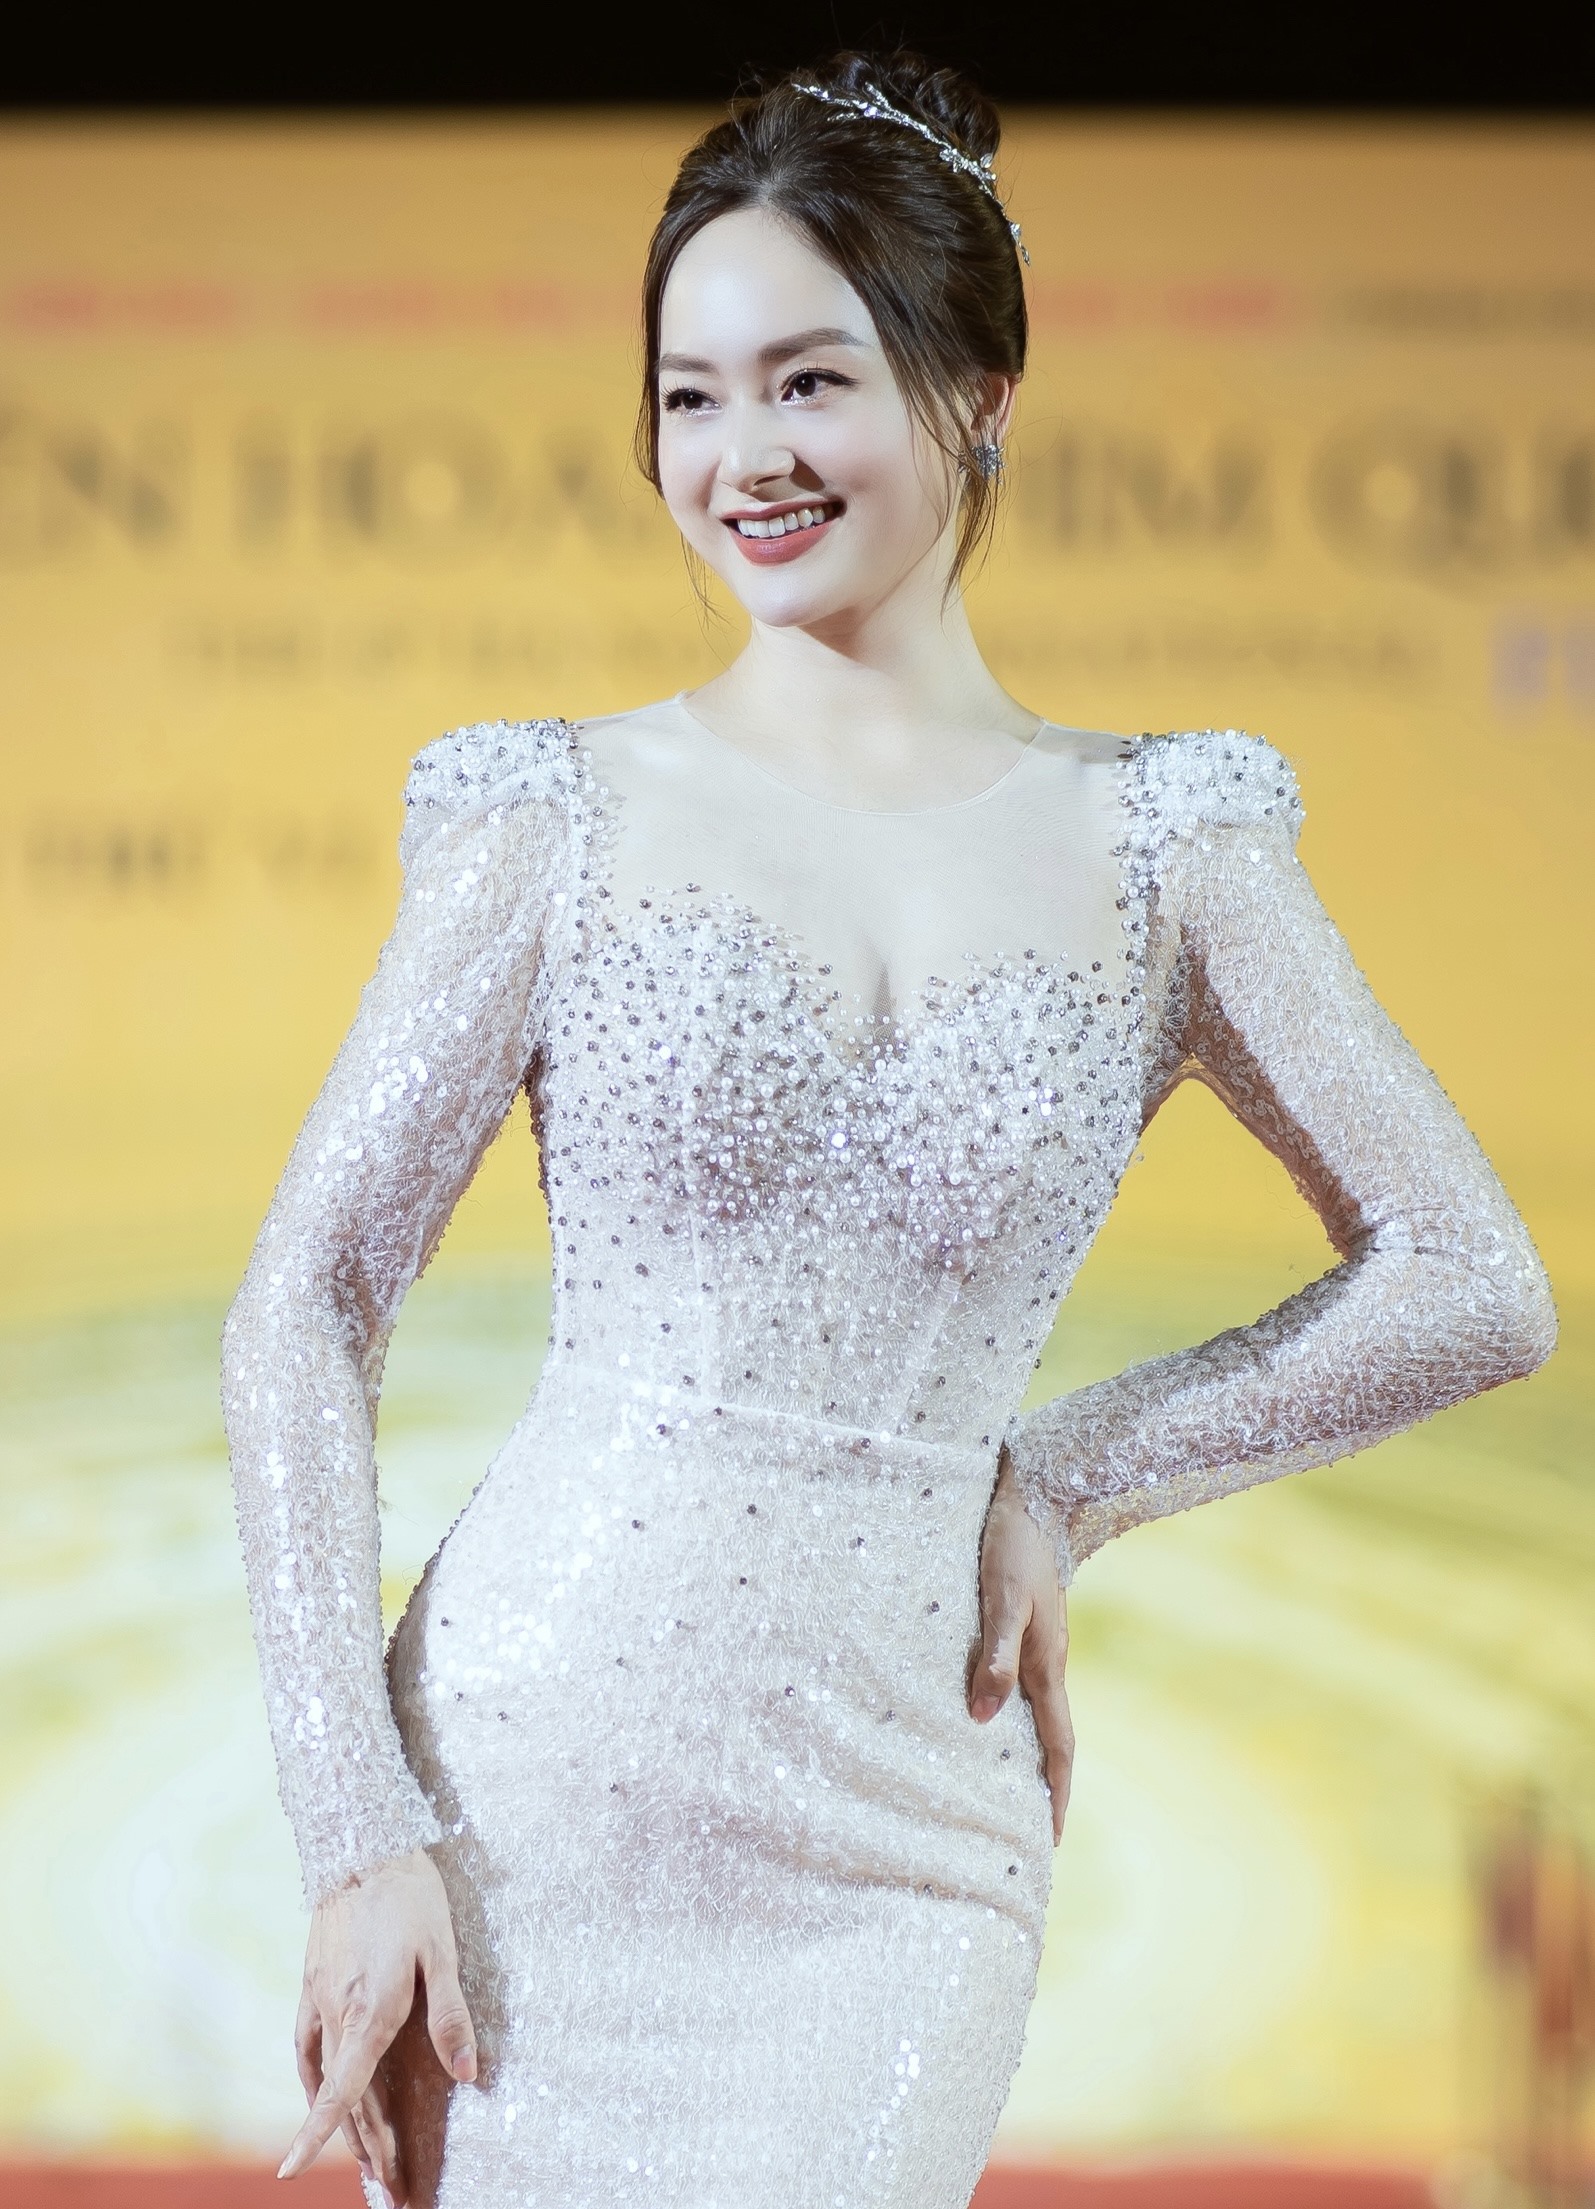 Kiểu trang điểm nhẹ nhàng và cách búi tóc cùng chiếc kẹp kết hợp với phụ kiện trang sức lấp lánh làm tôn lên nước da trắng hồng của nữ diễn viên.